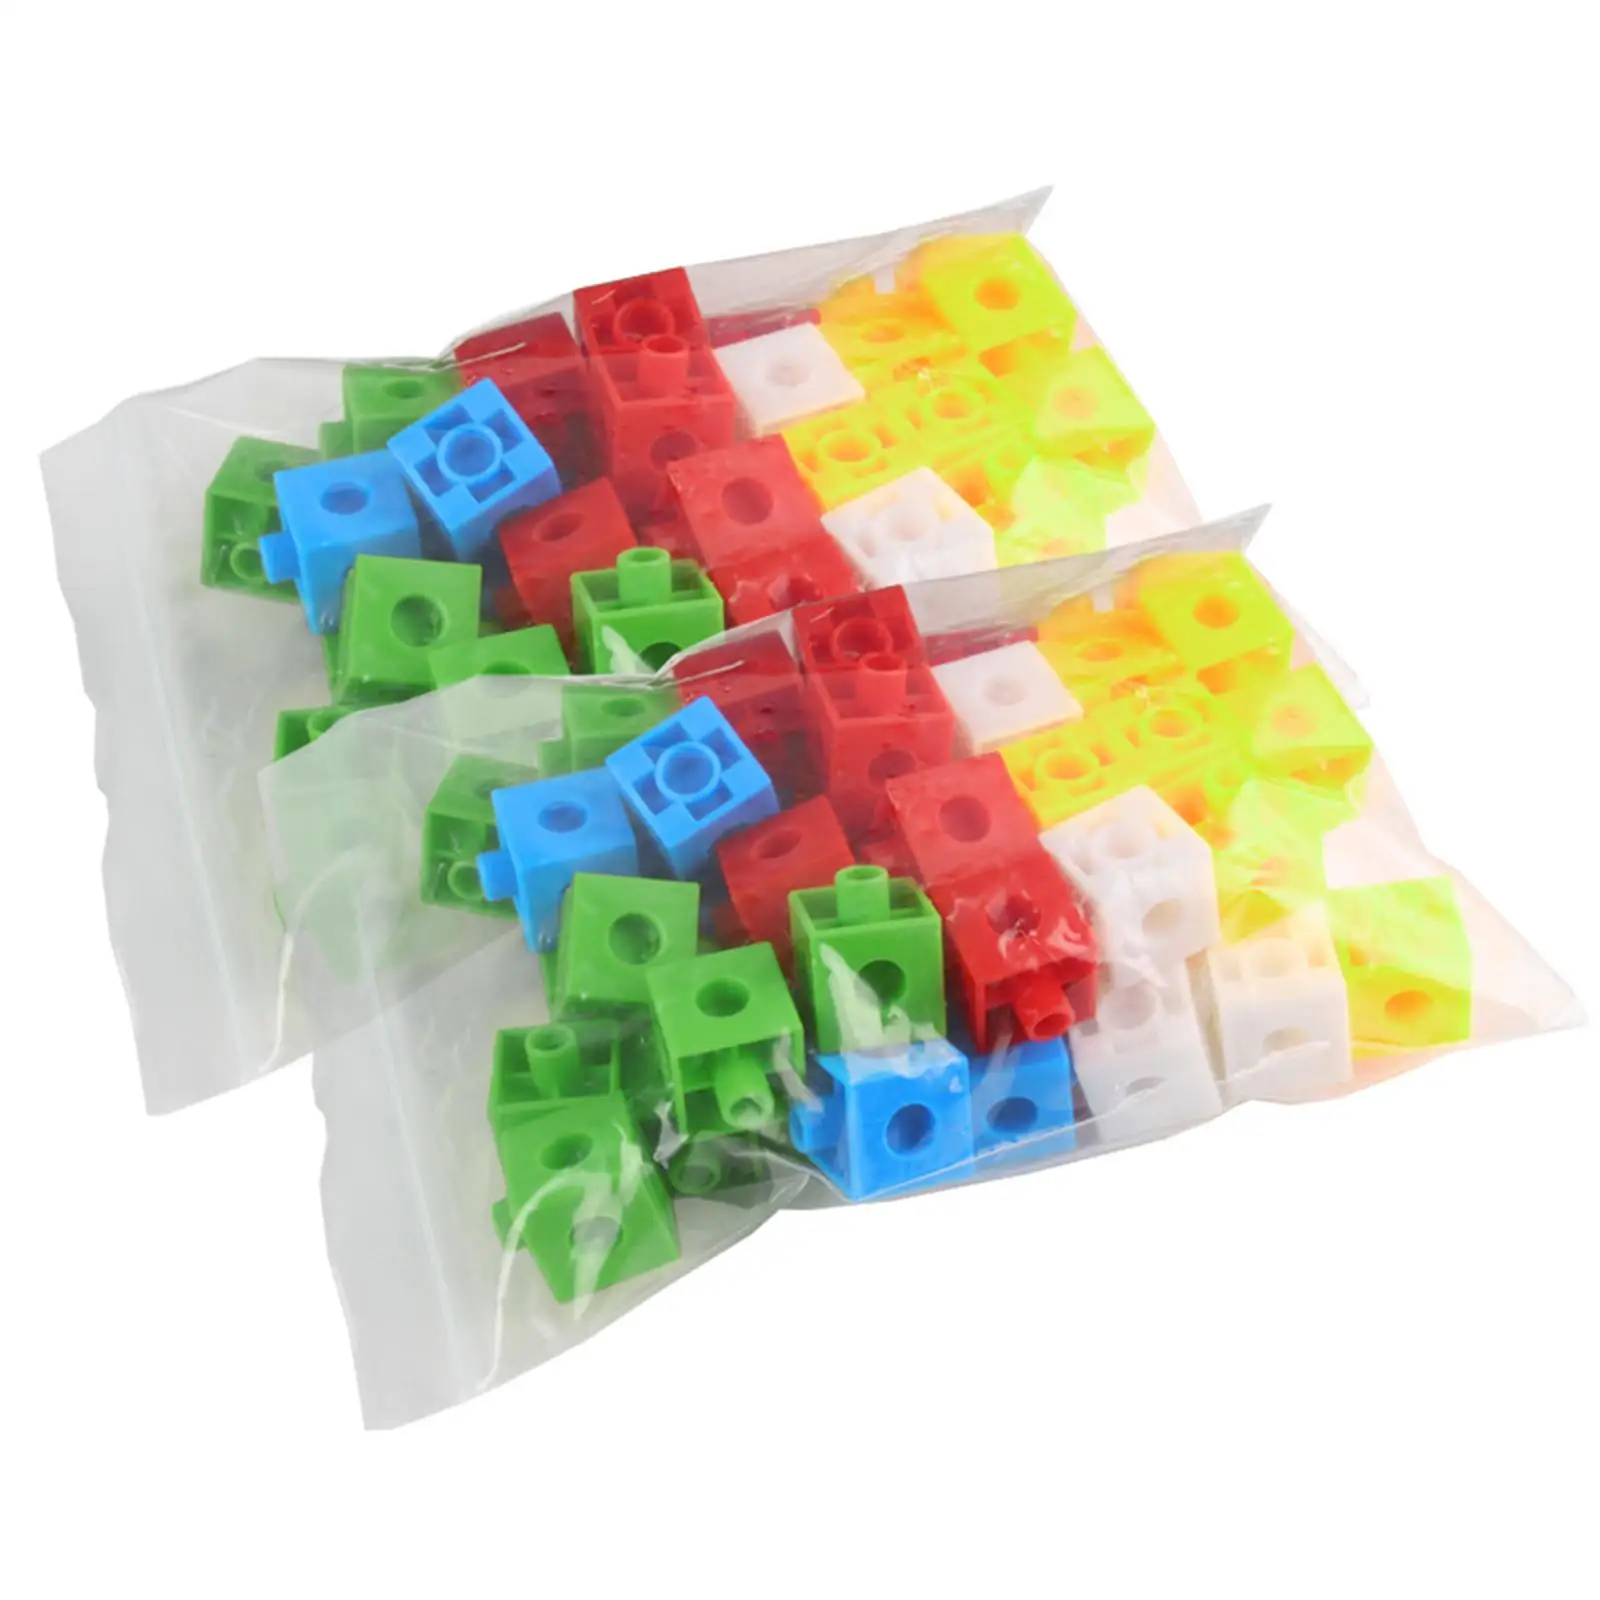 

Обучающие кубики, обучающая подсчитывающая игрушка, математические кубики, узорные занятия, набор из 100 кубиков для возраста от 5 лет